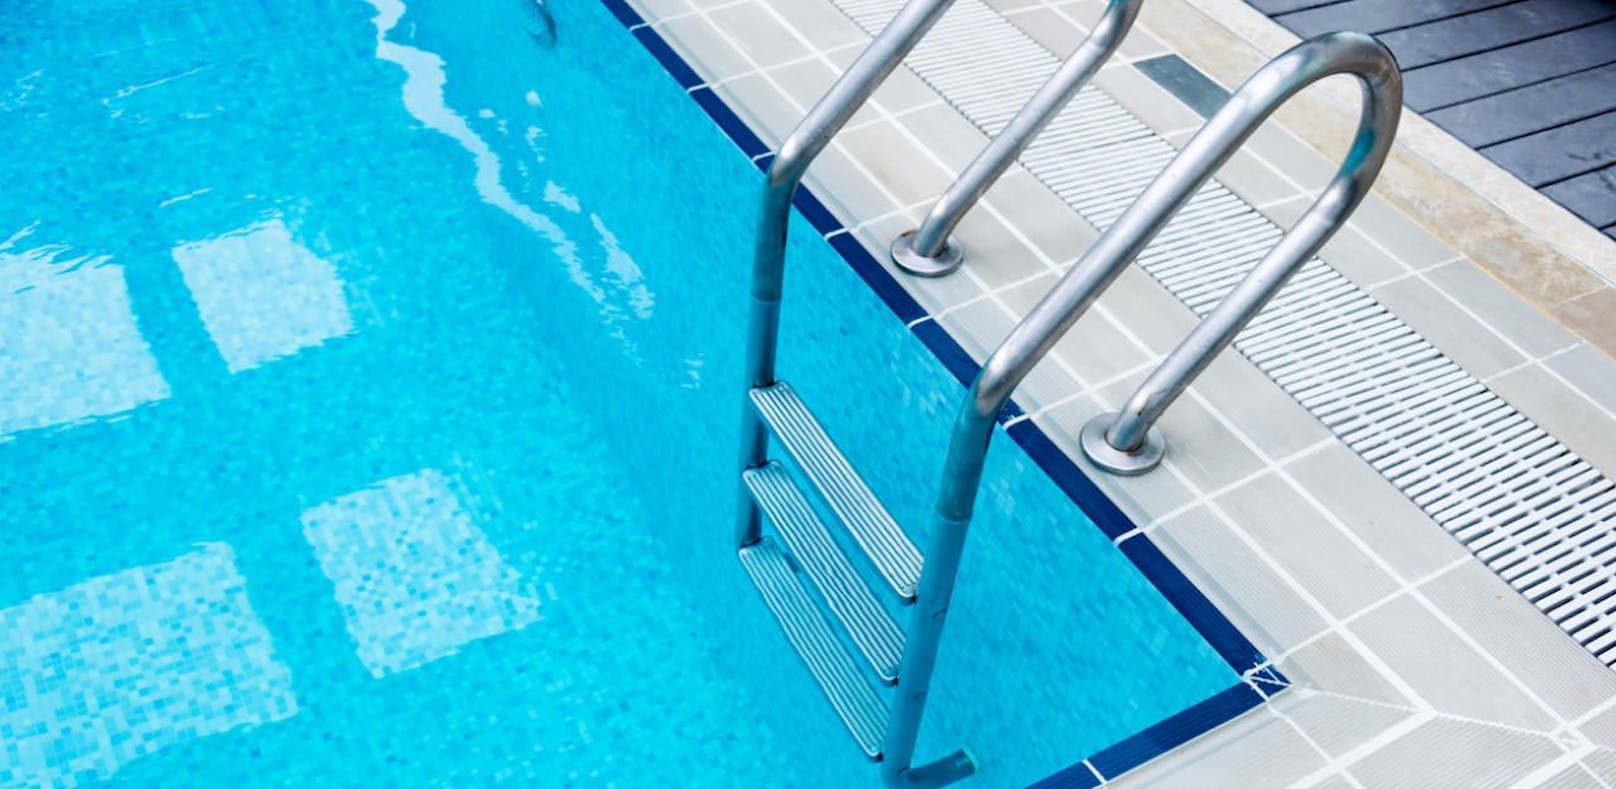 3-jähriges Mädchen trieb reglos im Schwimmbad